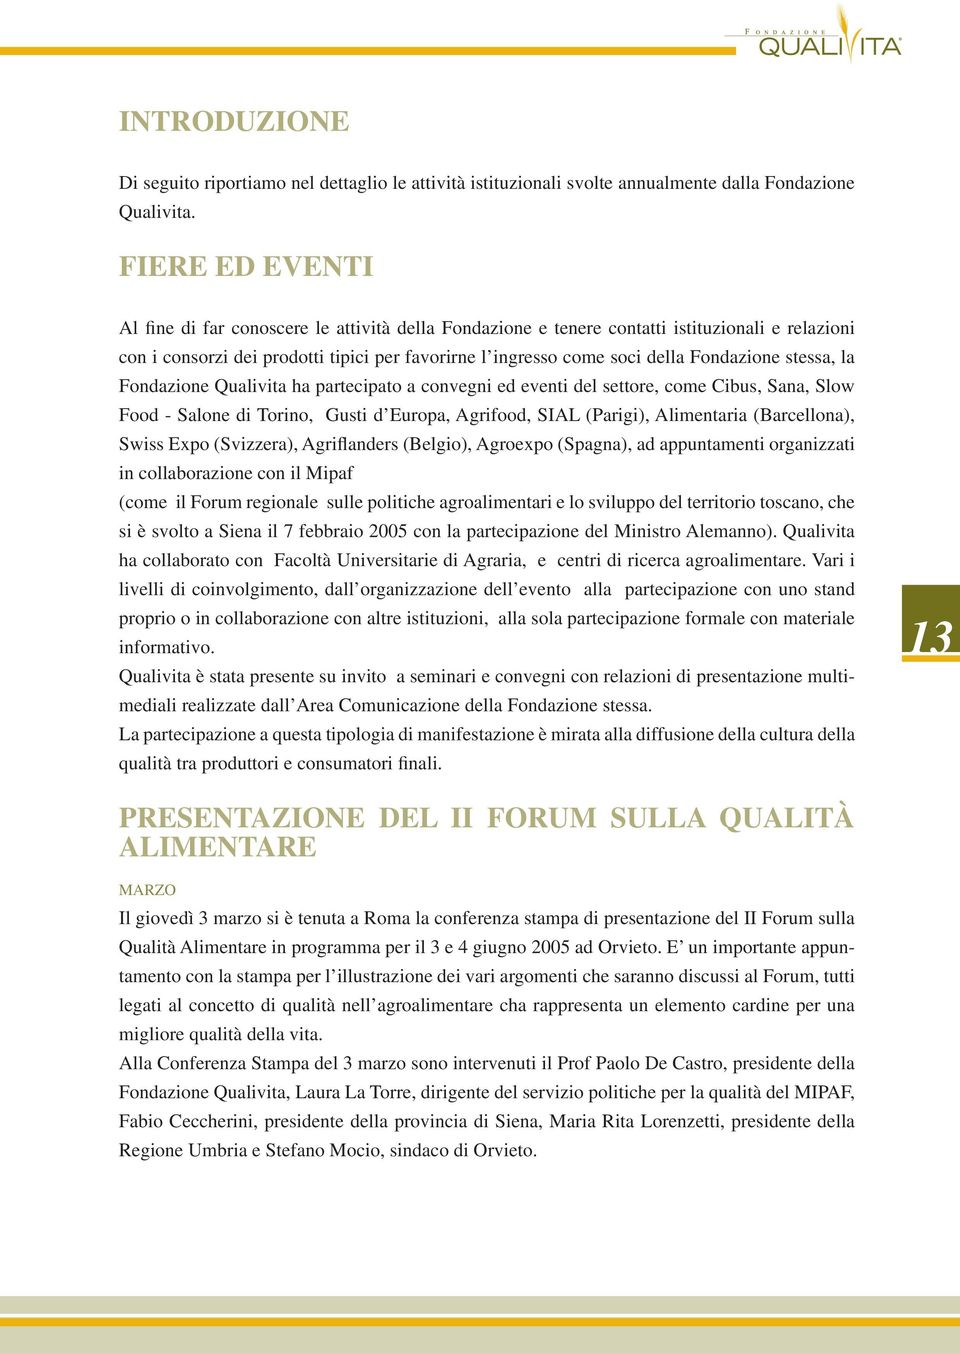 Fondazione stessa, la Fondazione Qualivita ha partecipato a convegni ed eventi del settore, come Cibus, Sana, Slow Food - Salone di Torino, Gusti d Europa, Agrifood, SIAL (Parigi), Alimentaria